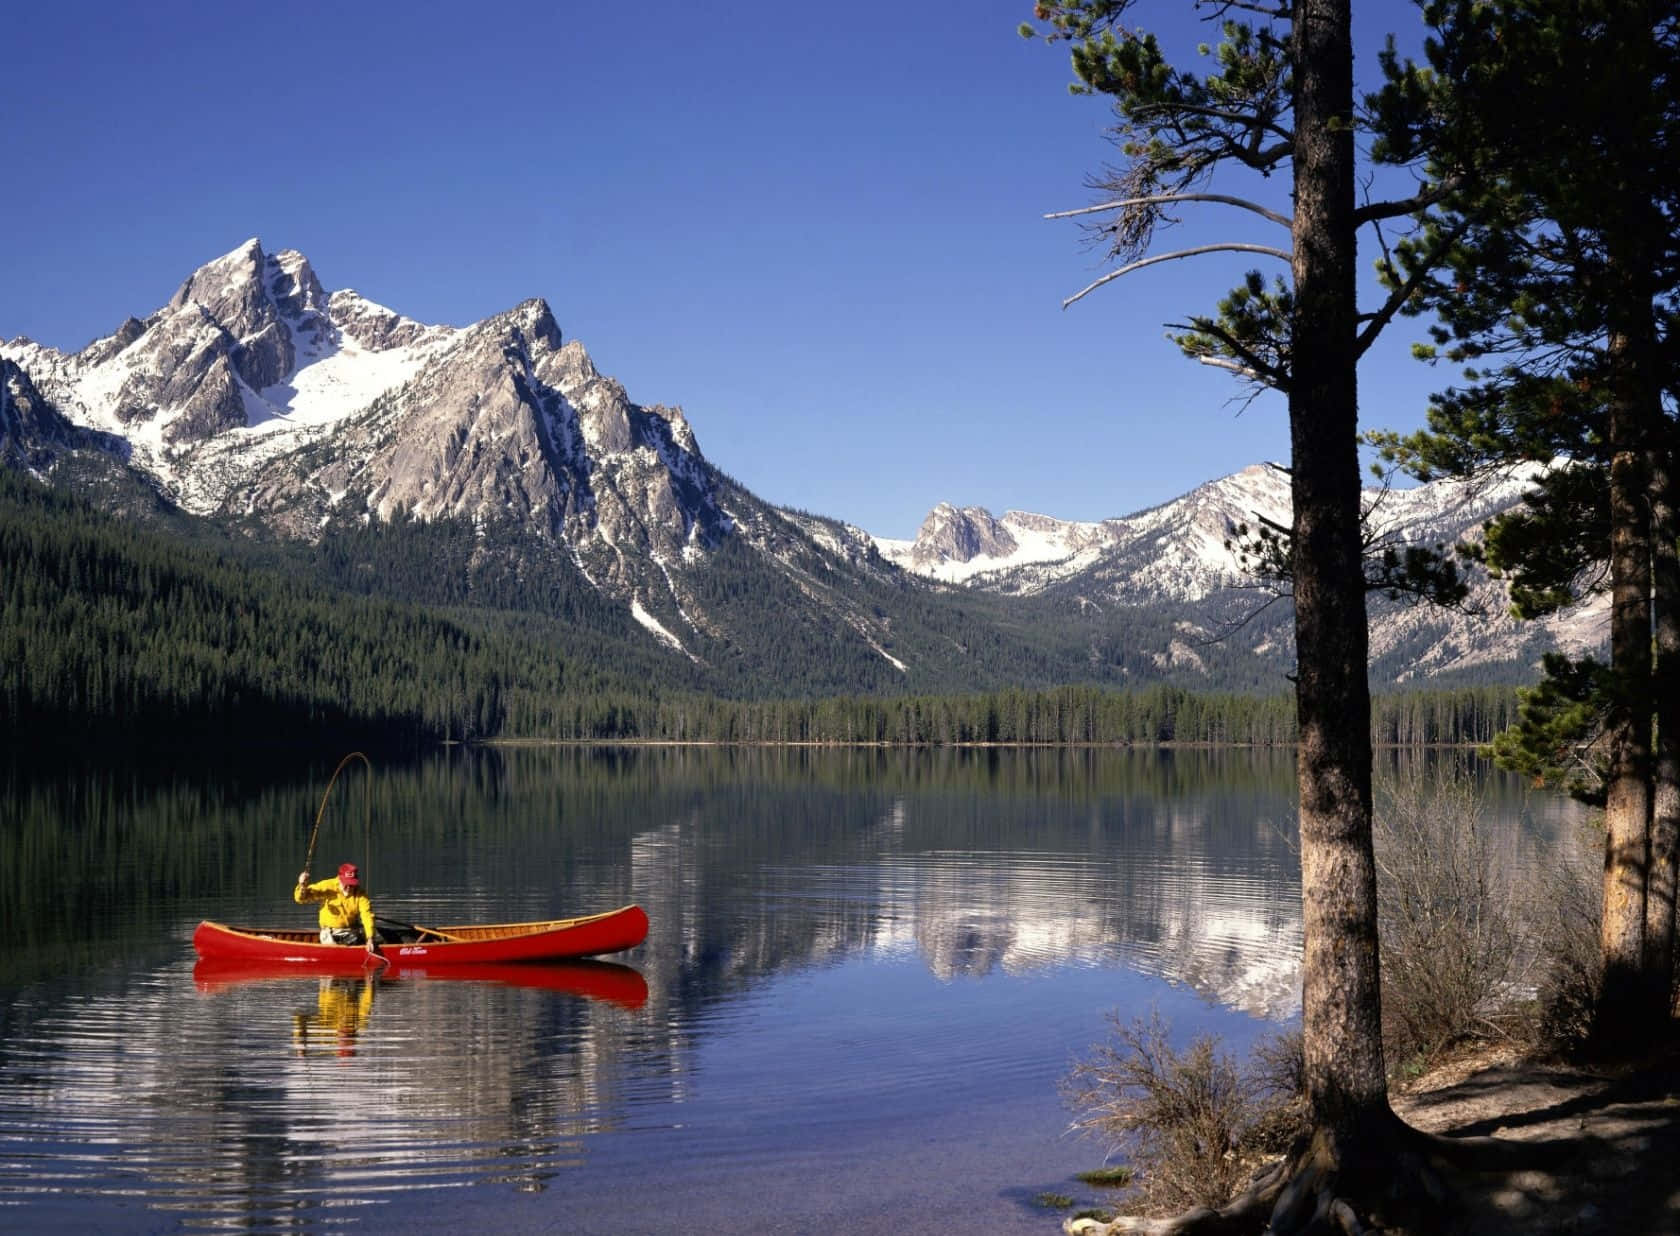 En mand padler en rød kano på en sø med bjerge i baggrunden. Wallpaper